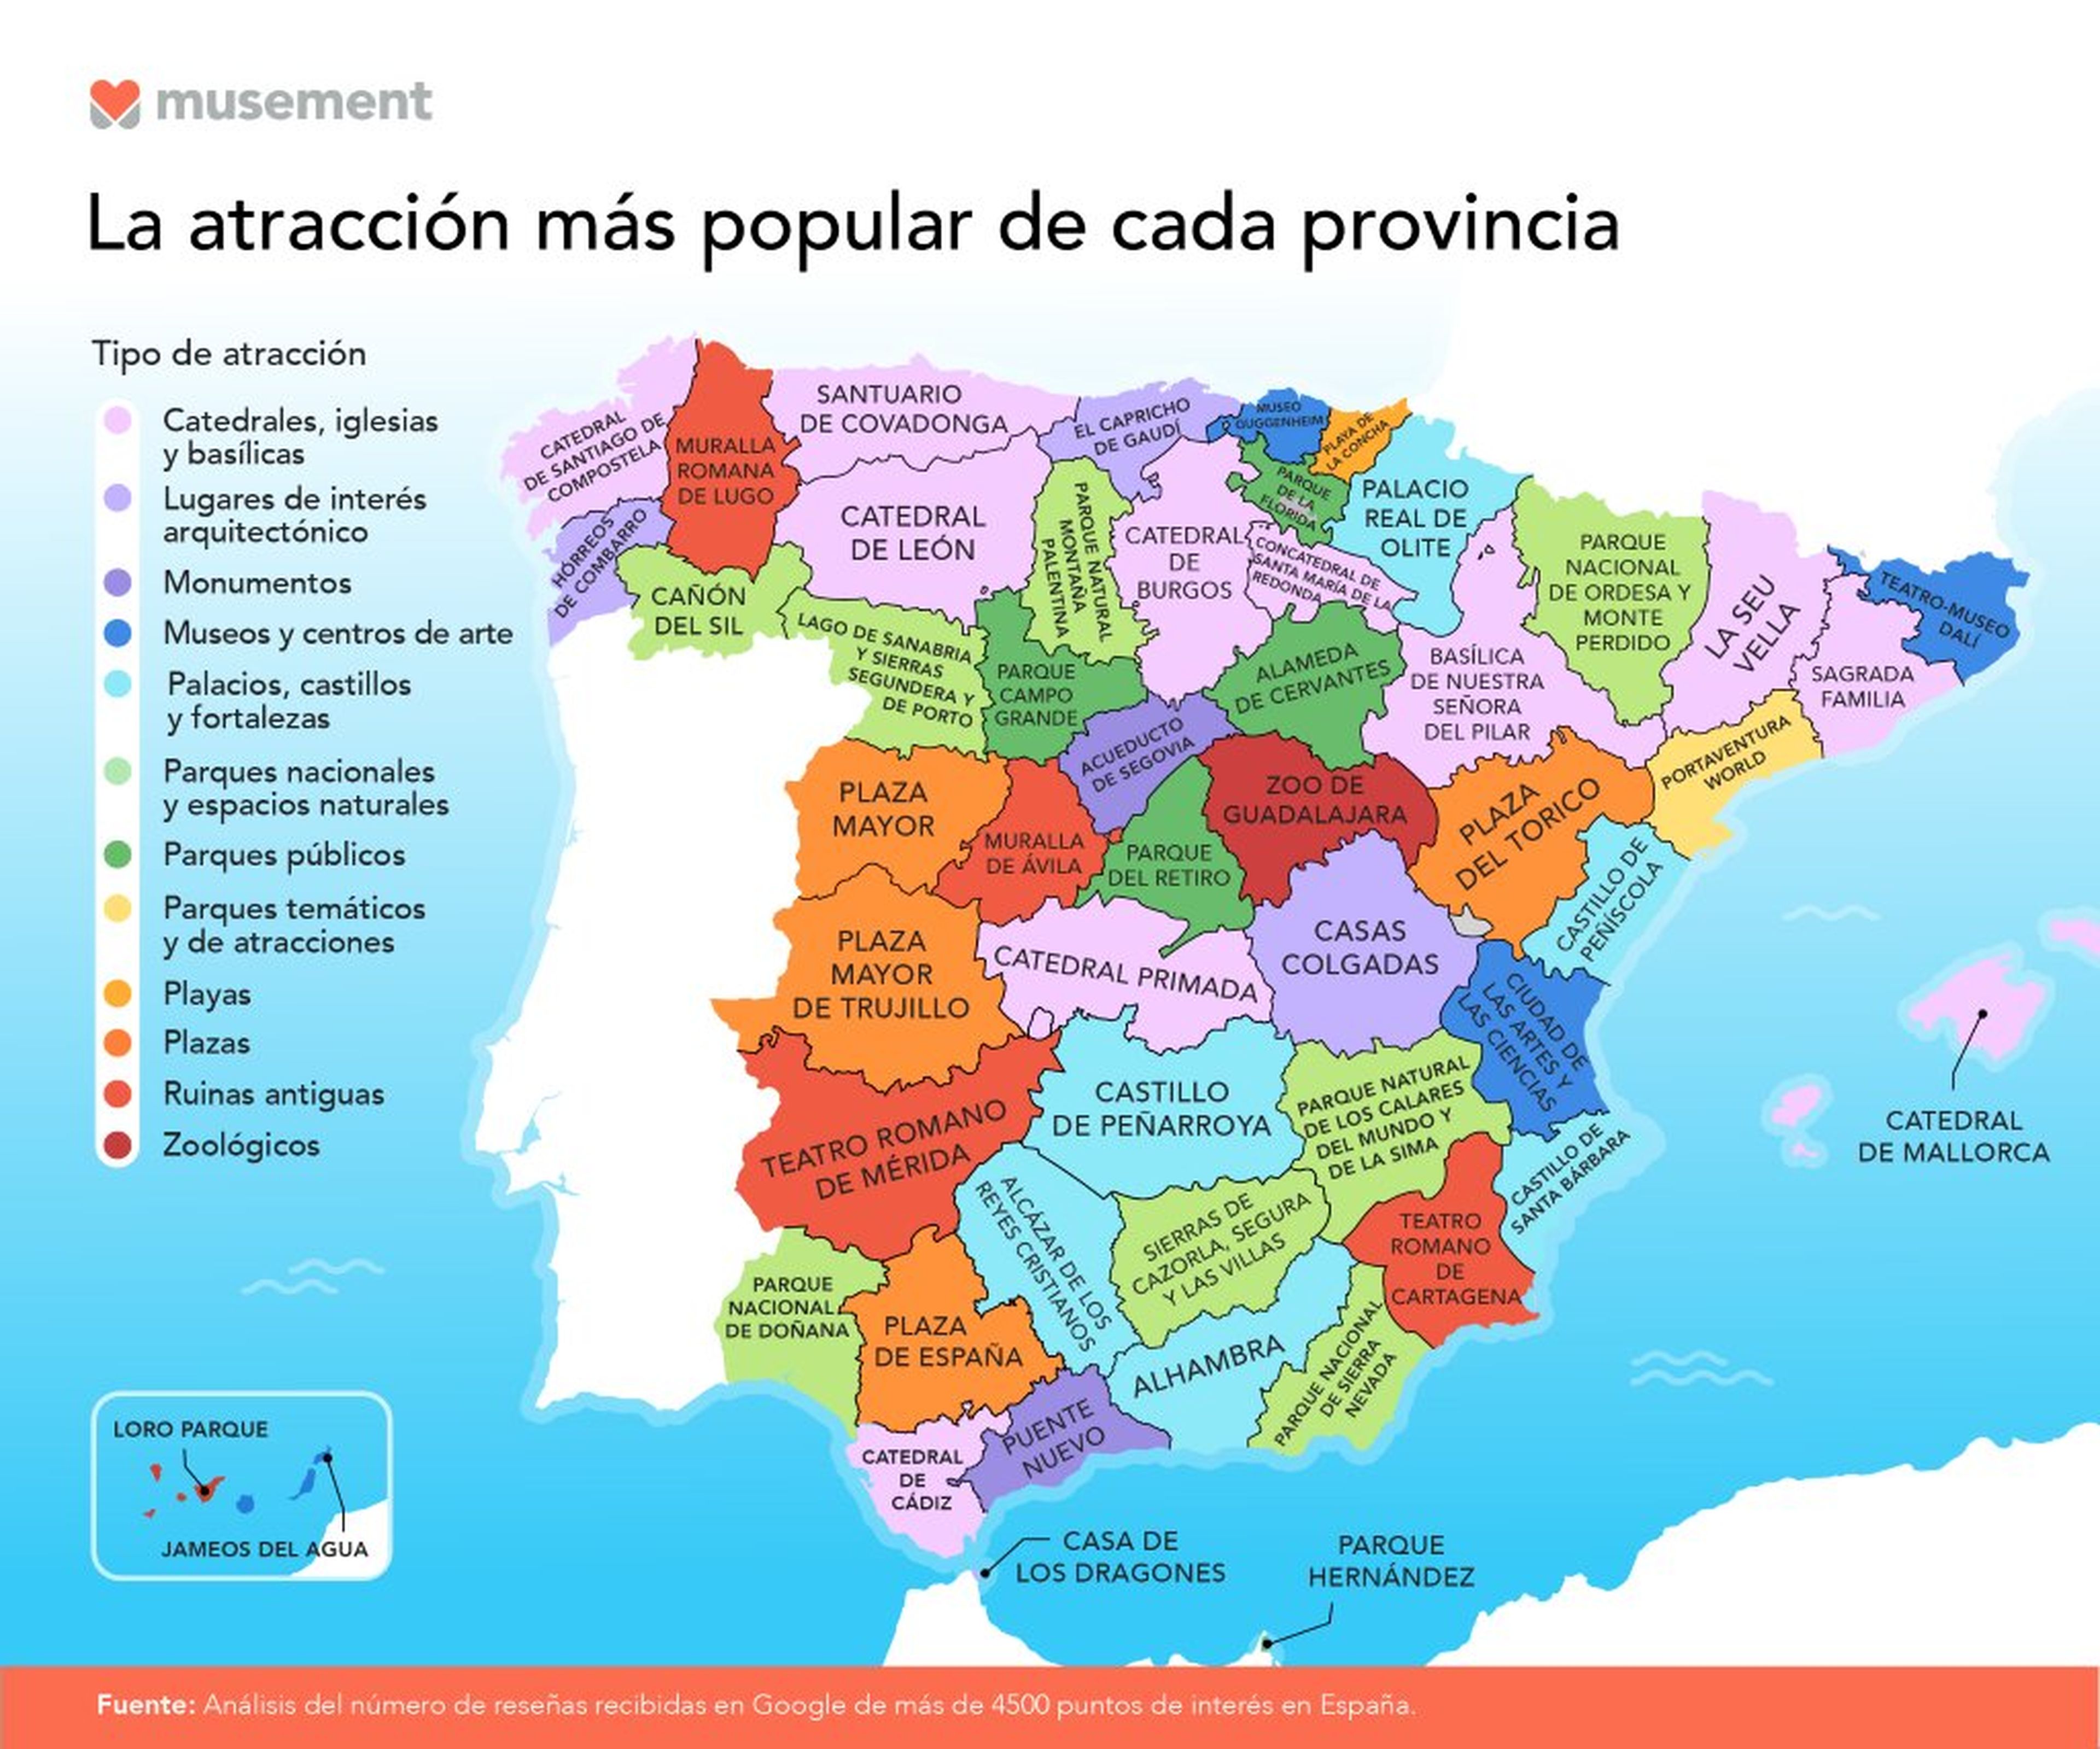 Mapa atracciones más populares de cada provincia española